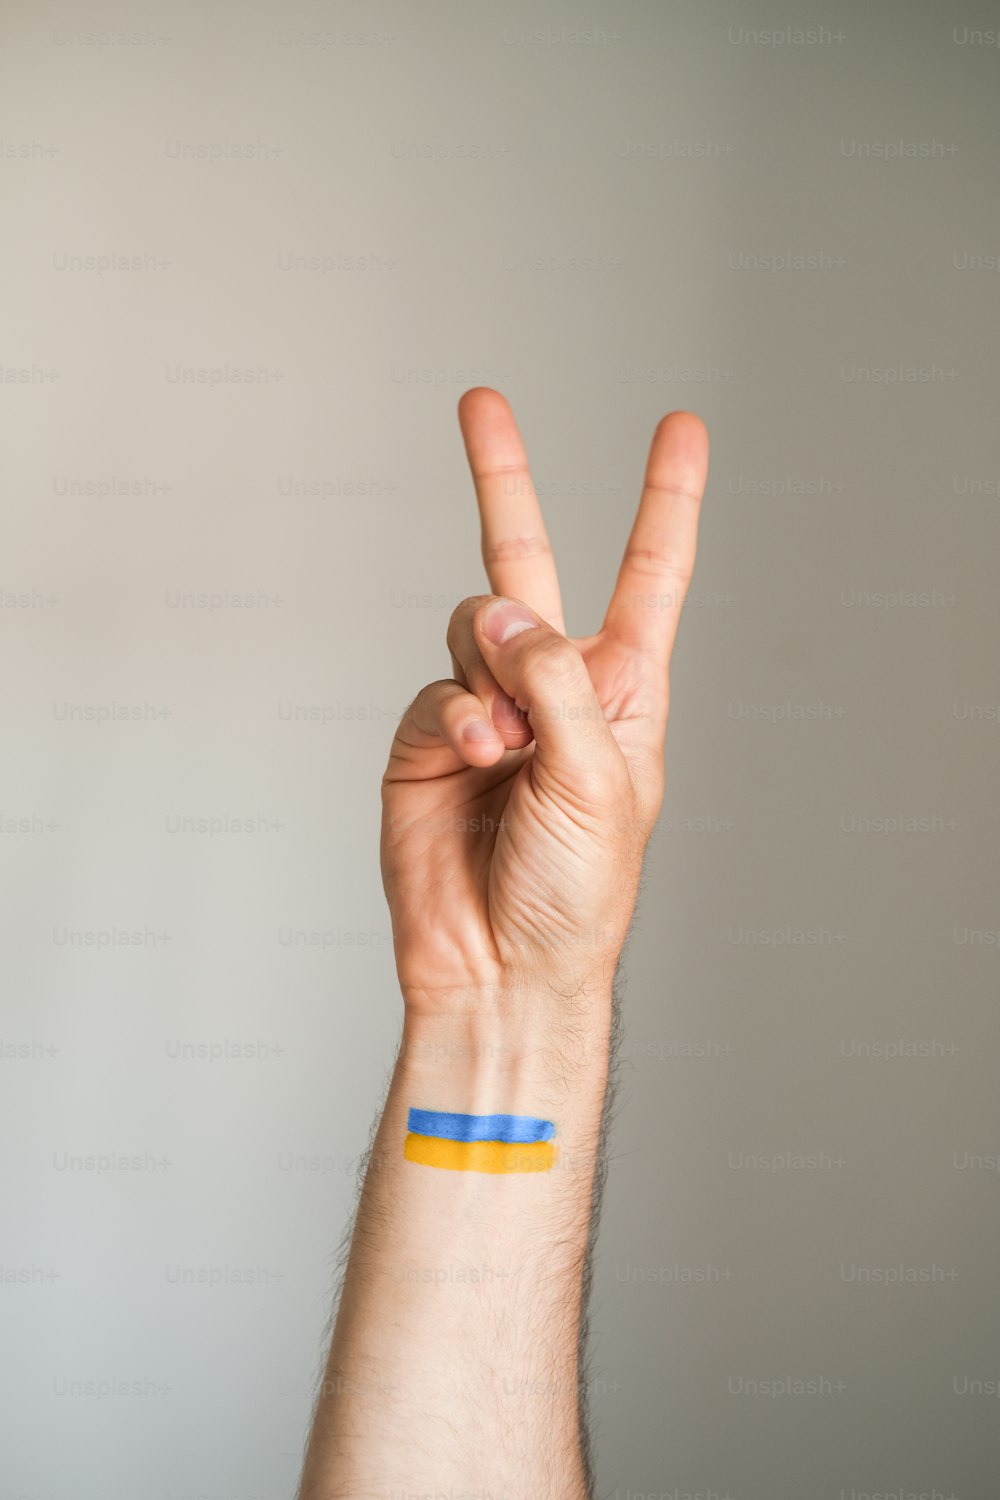 une personne faisant un signe de paix avec sa main